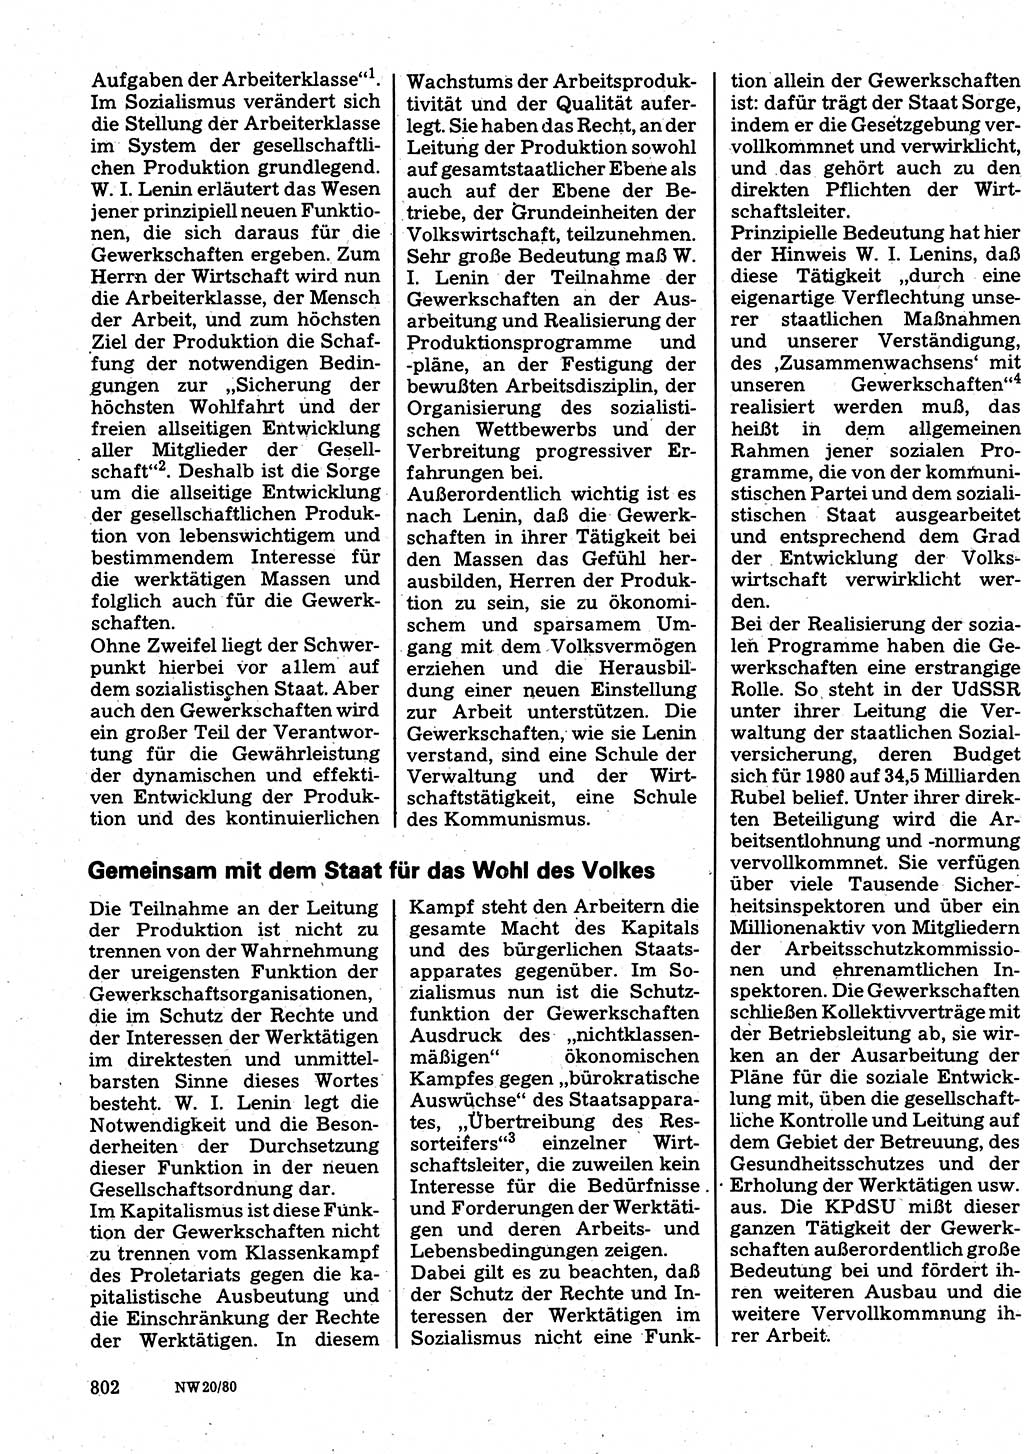 Neuer Weg (NW), Organ des Zentralkomitees (ZK) der SED (Sozialistische Einheitspartei Deutschlands) für Fragen des Parteilebens, 35. Jahrgang [Deutsche Demokratische Republik (DDR)] 1980, Seite 802 (NW ZK SED DDR 1980, S. 802)